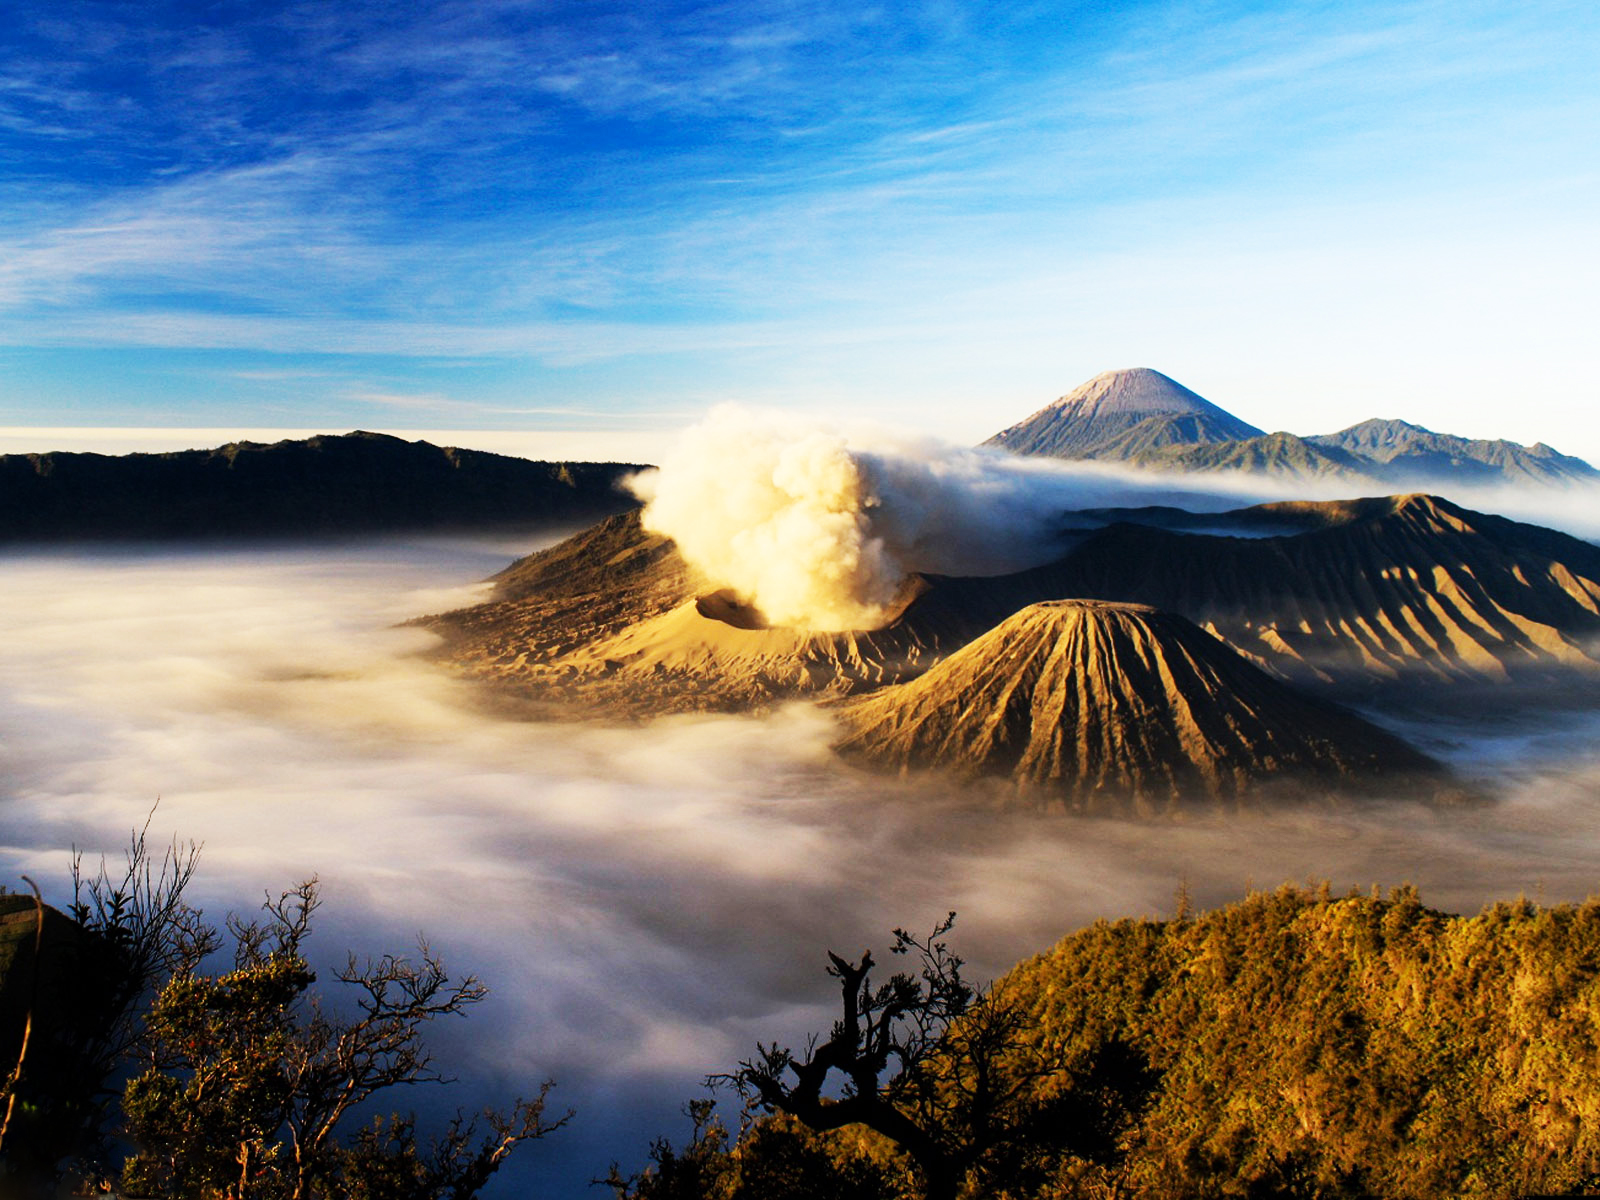 Referensi dan Rekomendasi Tempat Wisata di Indonesia: Wisata Gunung Bromo